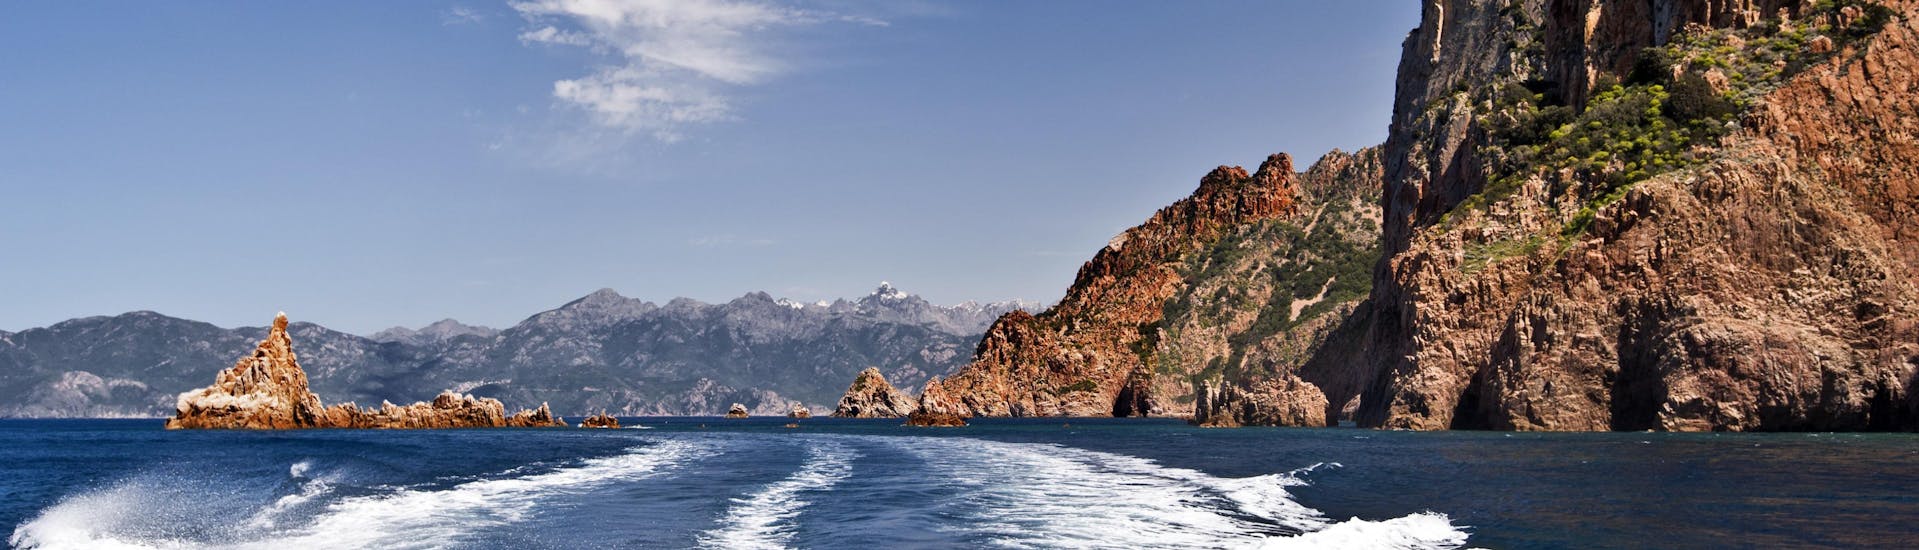 Vue de l'arrière d'un bateau lors d'une balade en bateau de Sagone aux impressionnantes Calanques de Piana, sur la côte ouest de la Corse.